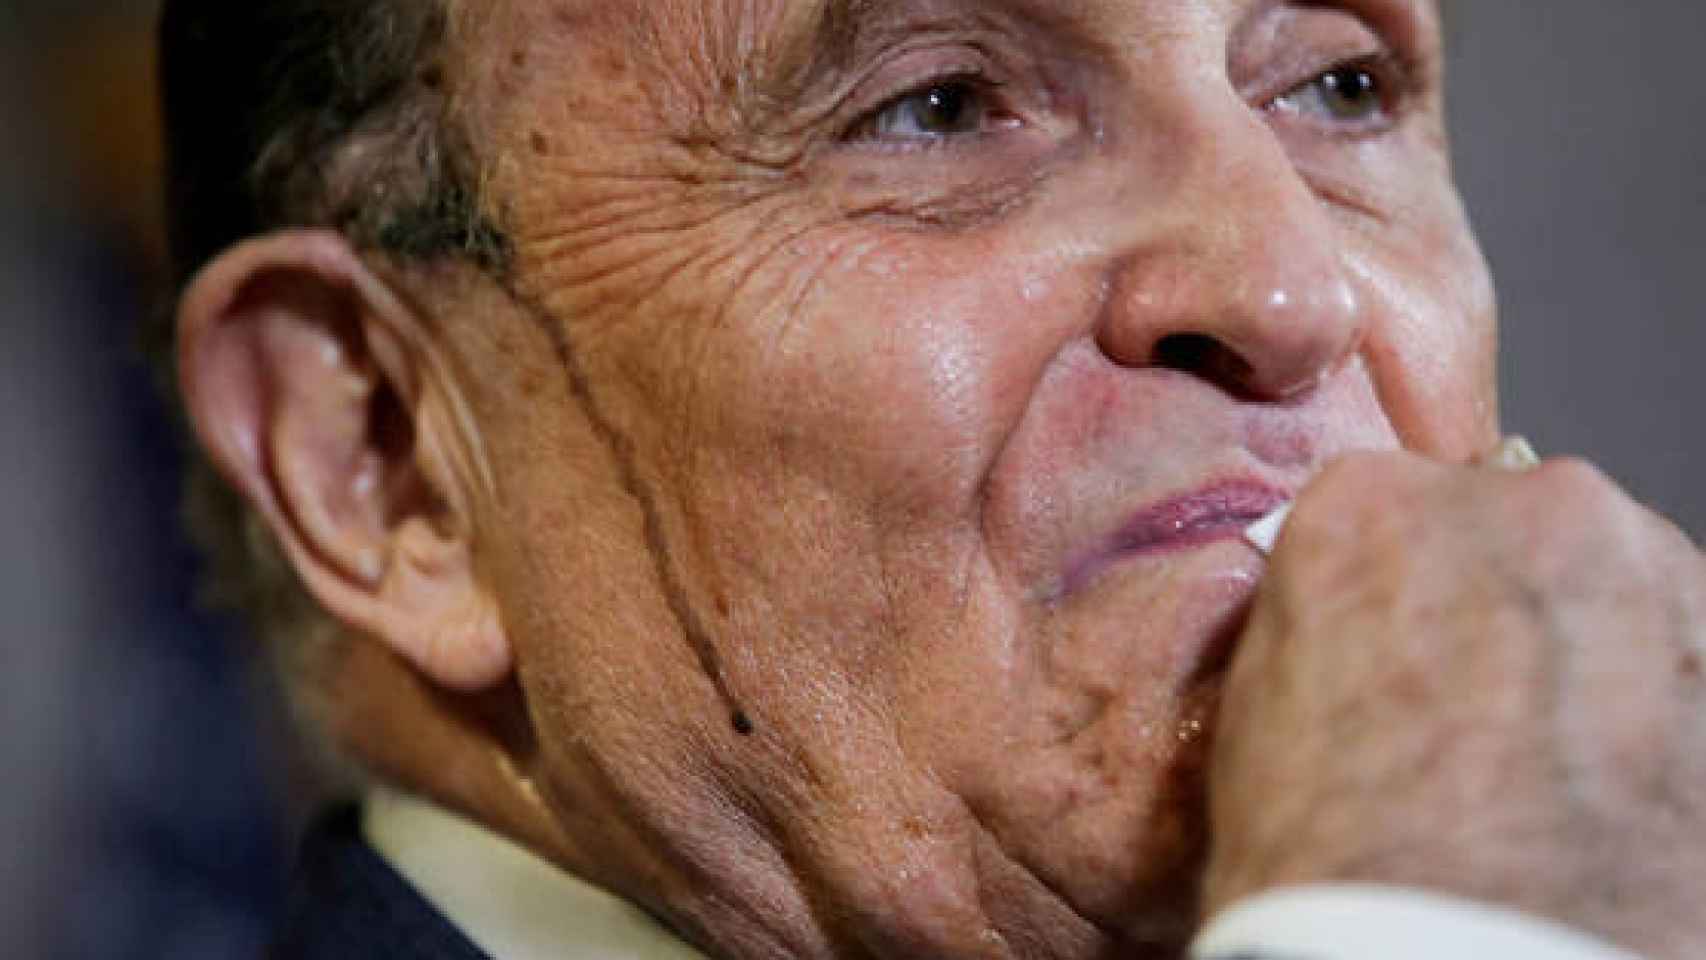 Rudy Giuliani en la polémica rueda de prensa con el sudor manchado de tinte.